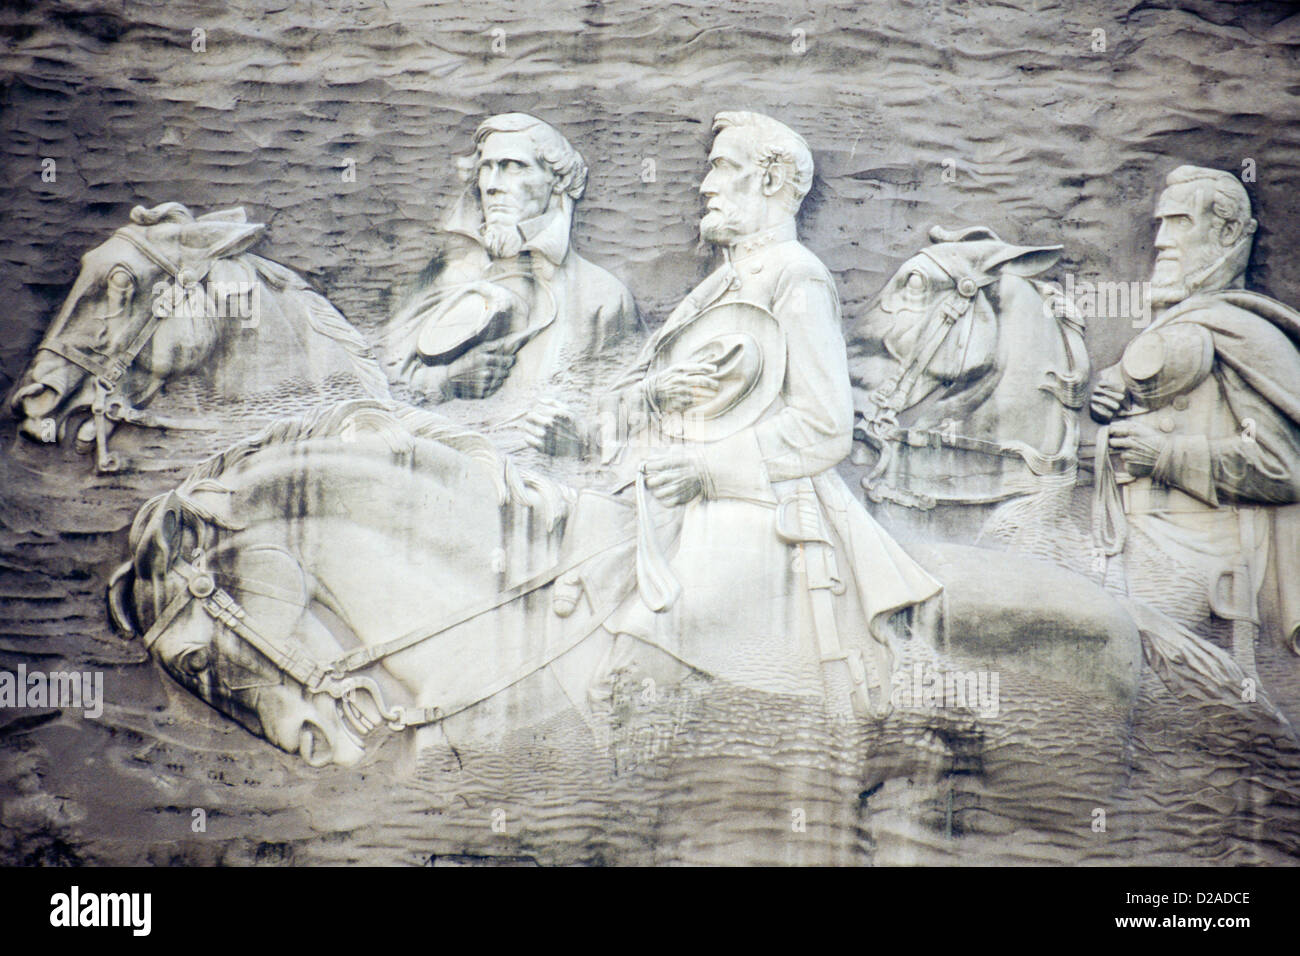 Georgien, Stone Mountain - Steinrelief von Jeff Davis, R.E. Lee & Stonewall Jackson Stockfoto